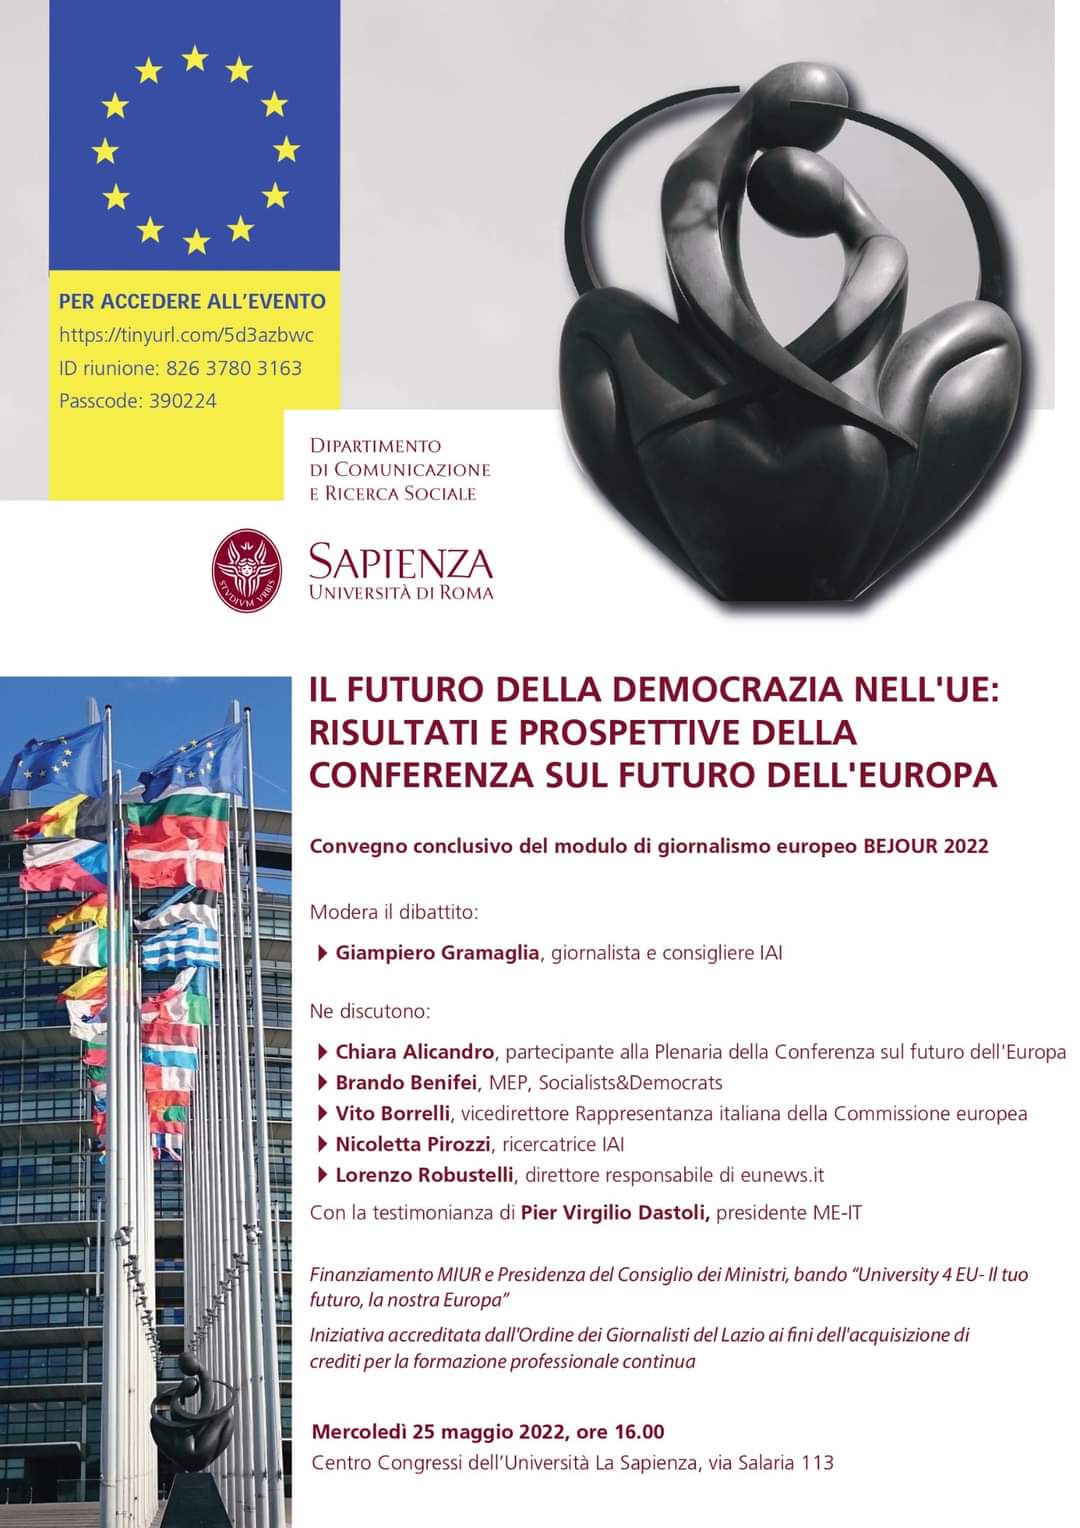 “Il futuro della democrazia nell’Ue”: convegno alla Sapienza il 25 maggio